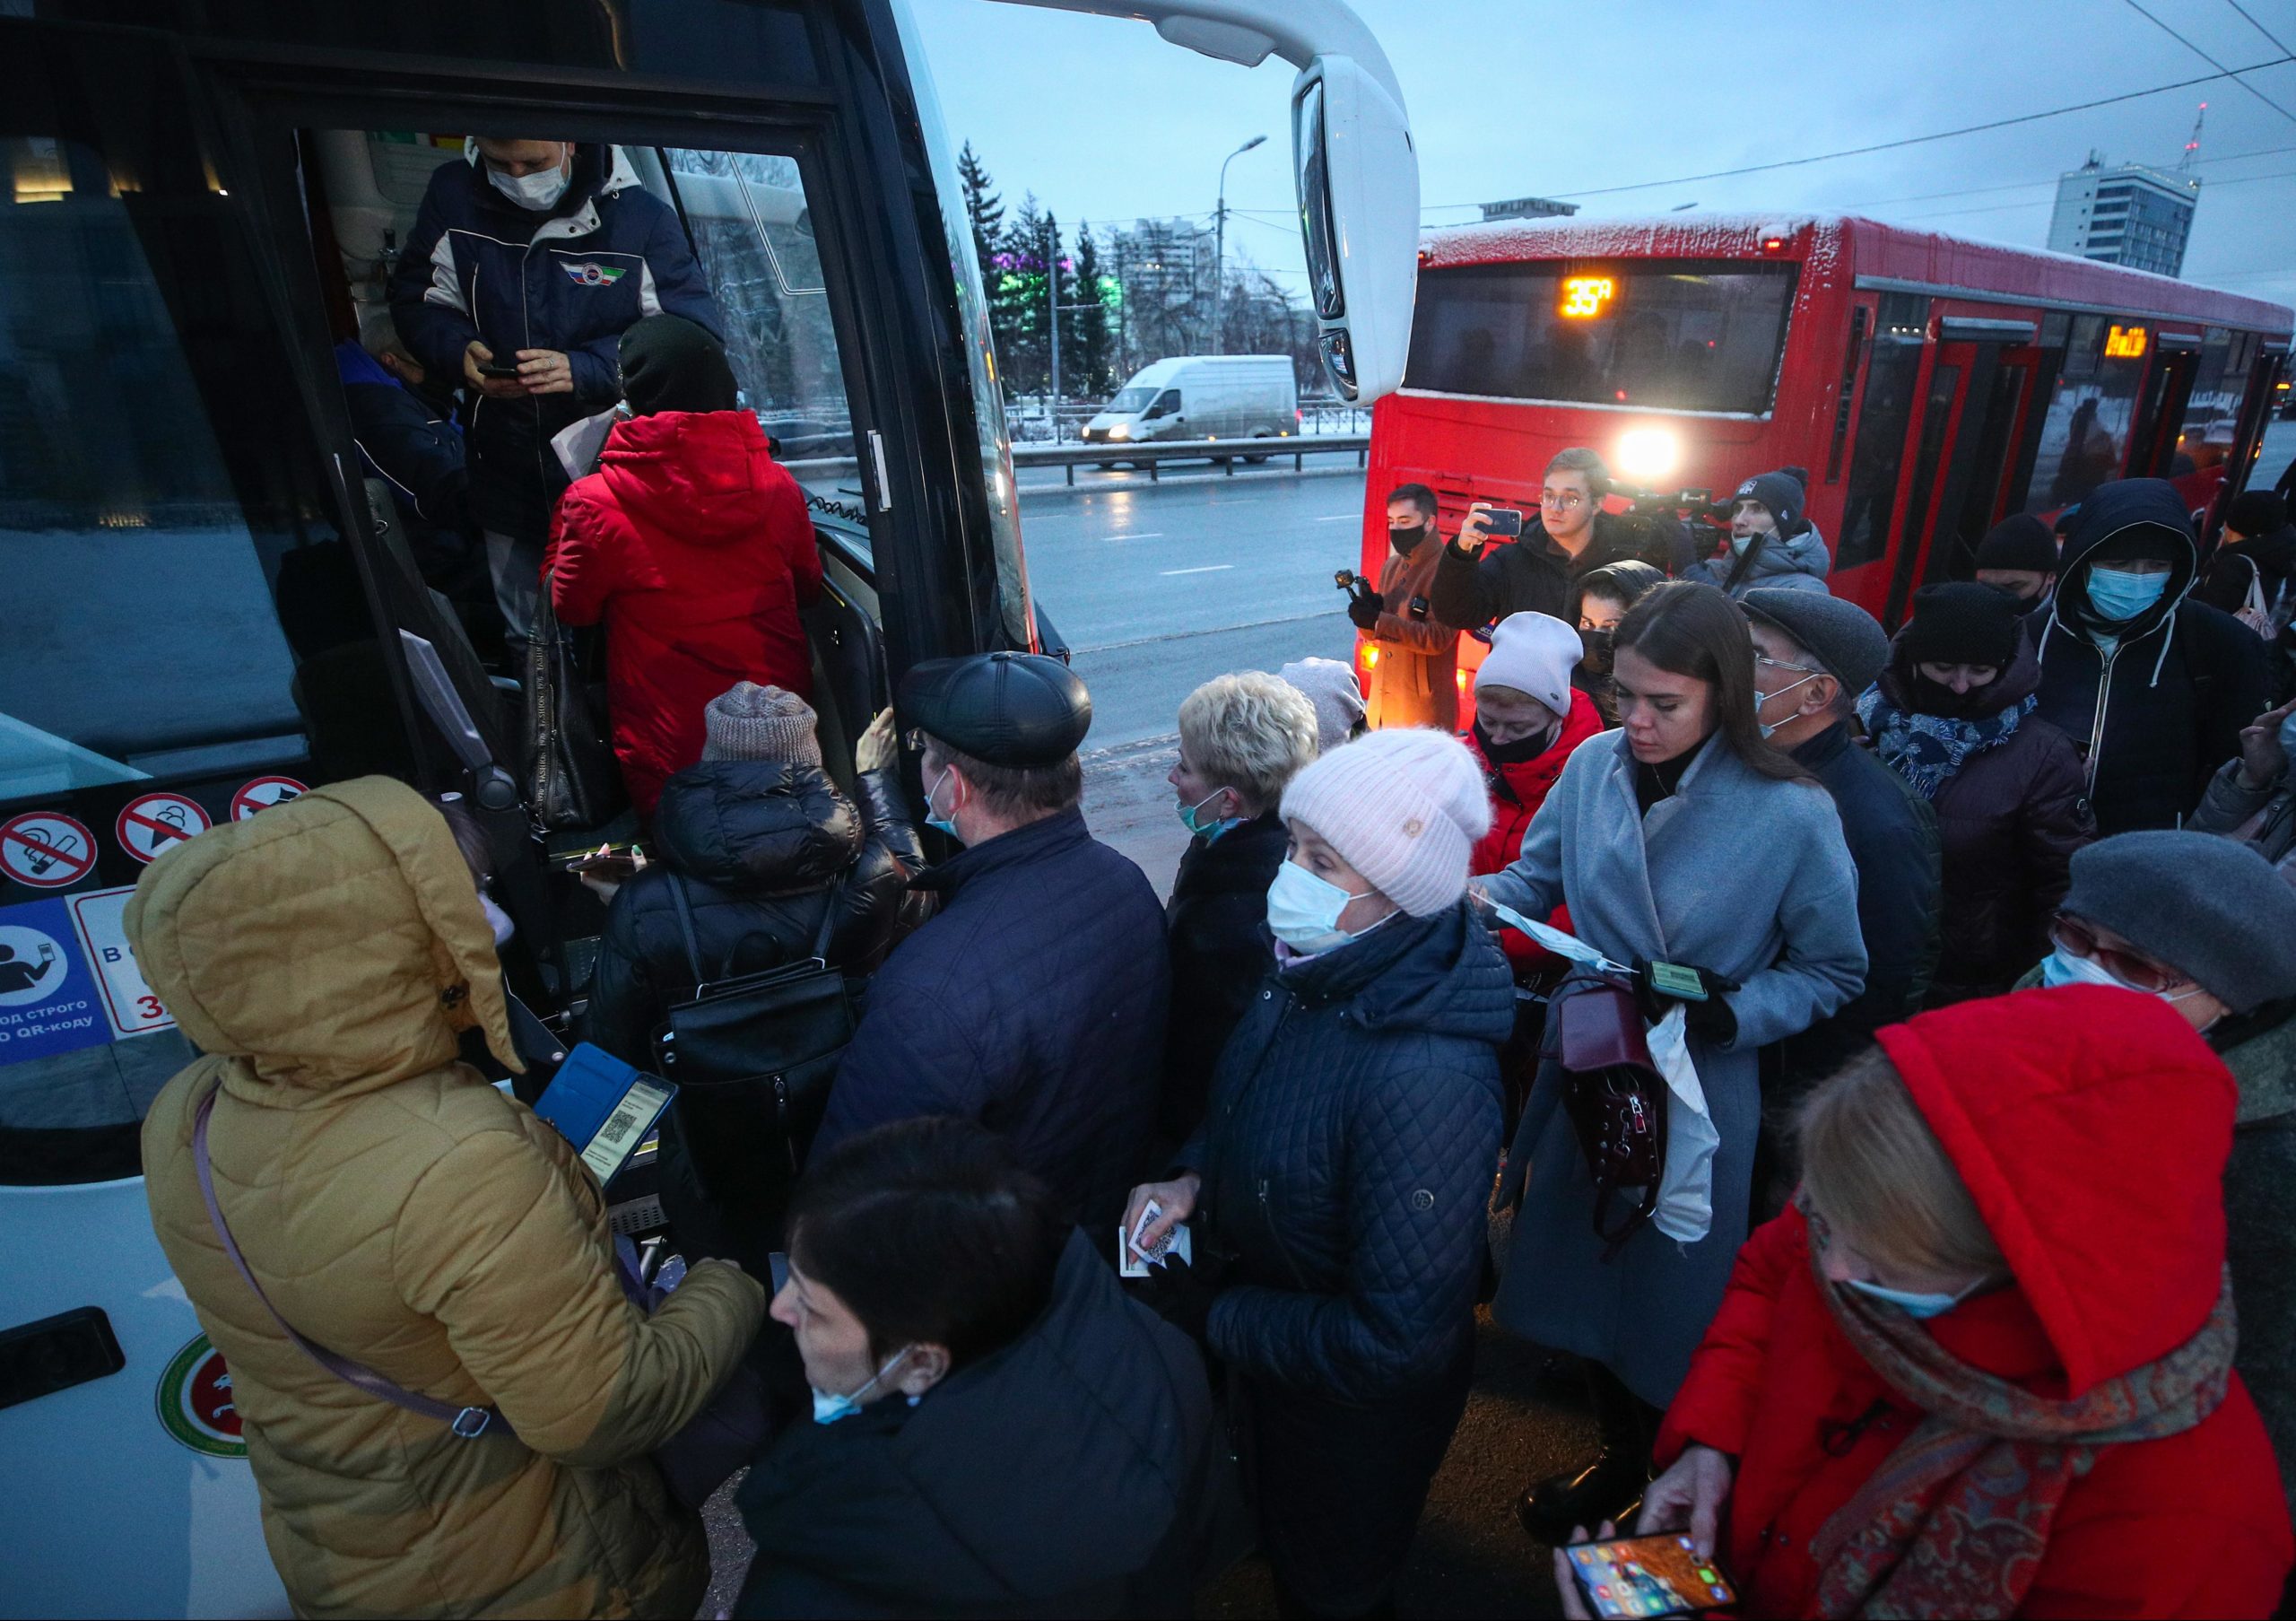 22 ноября 2017. Пассажиры общественного транспорта. Люди в автобусе. Пассажиры в автобусах Казани. Скандал в автобусе.